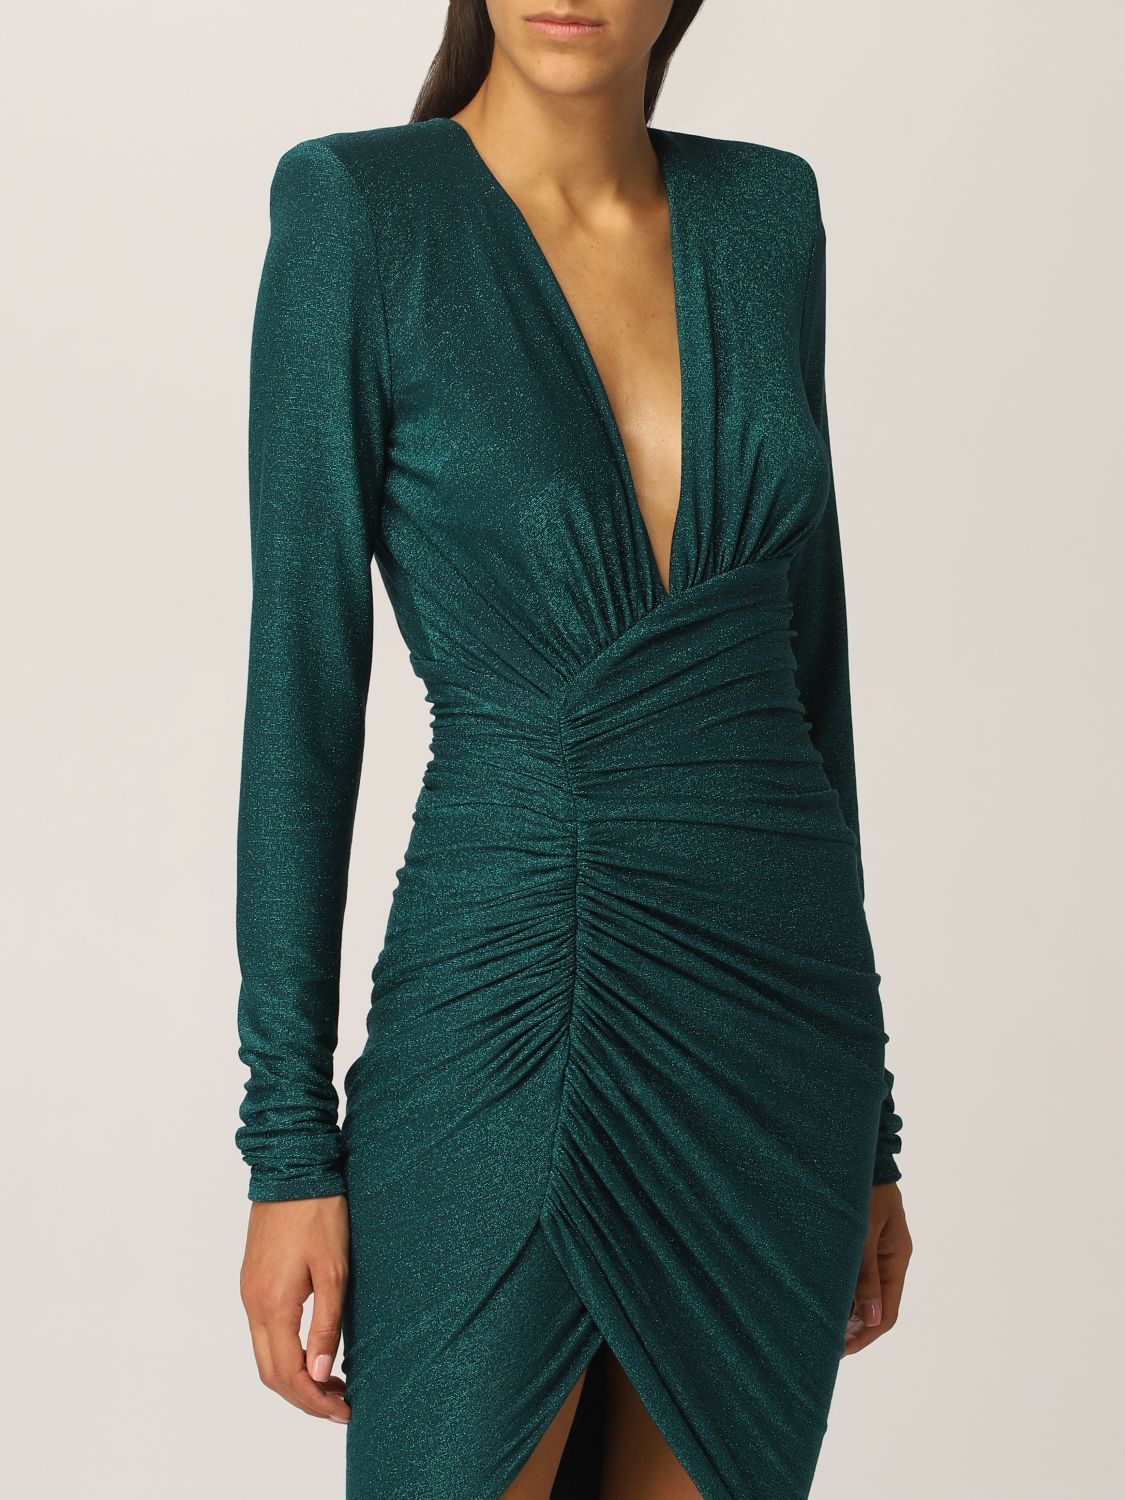 ALEXANDRE VAUTHIER: Dress women - Green ...